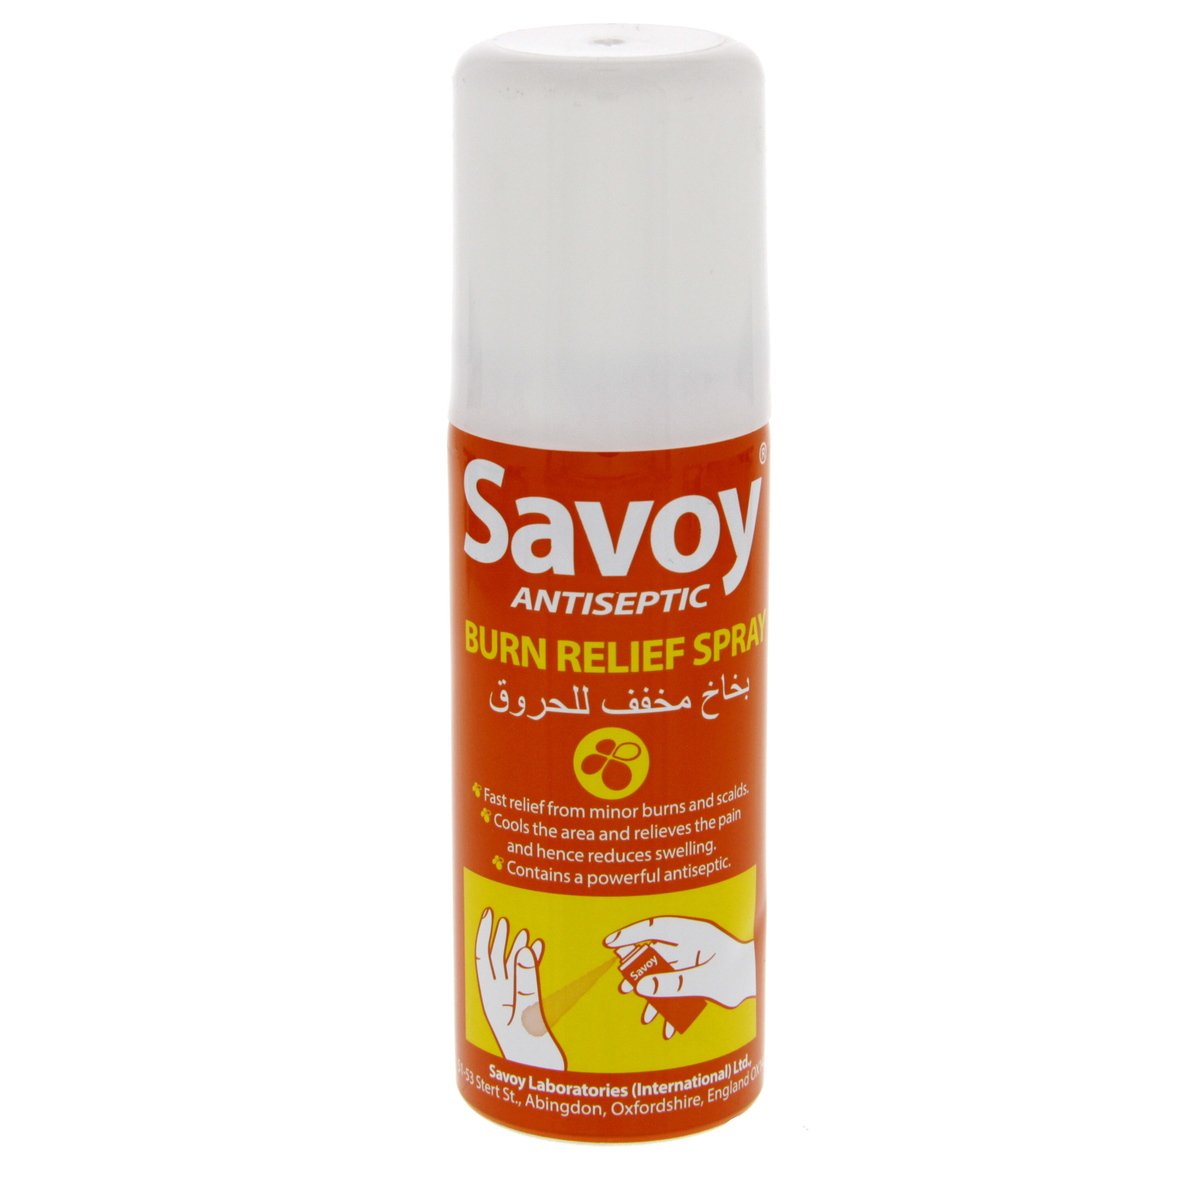 Buy Savoy Antiseptic Burn Relief Spray 50 ml Online at Best Price | Medicine&First Aids. | Lulu UAE in UAE